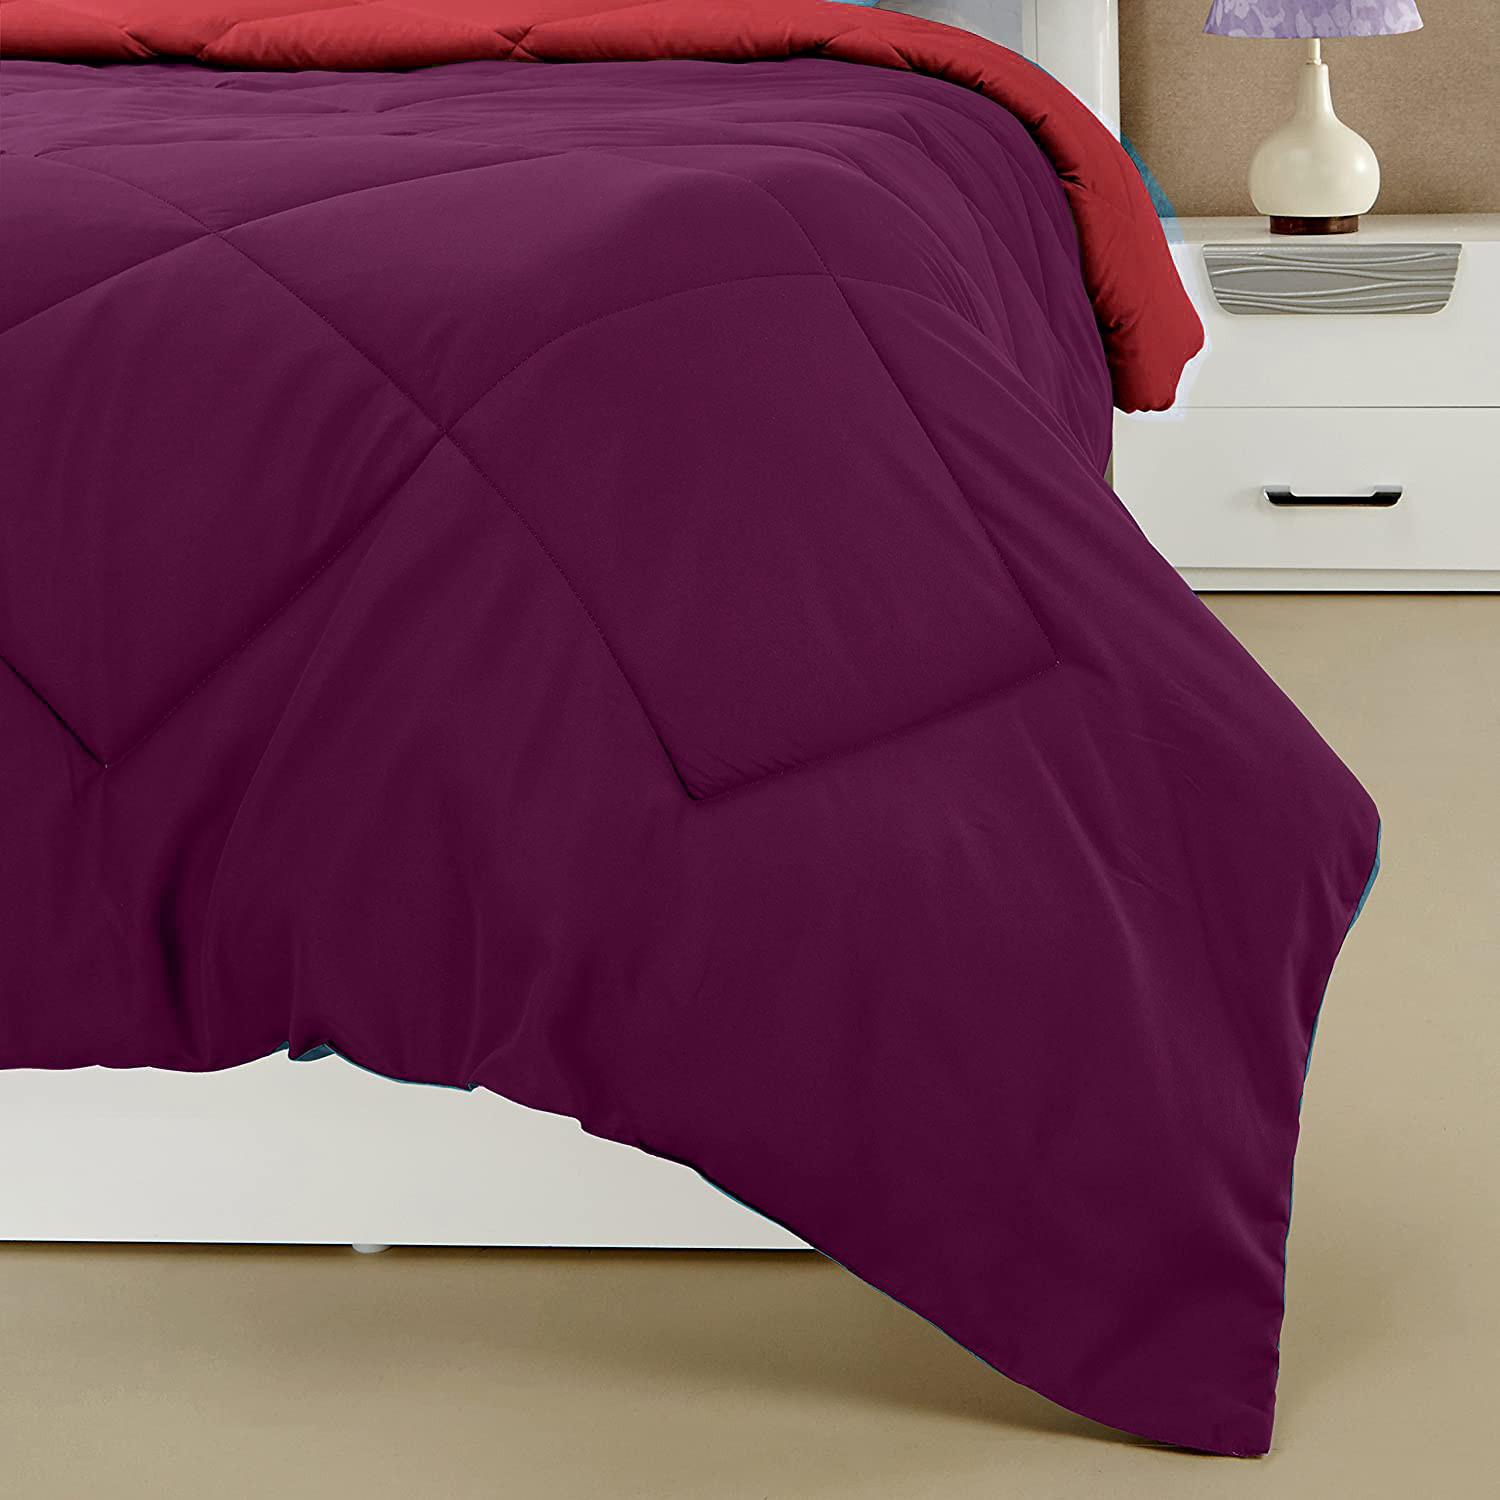 Kuber Industries Comforter for Double Bed|Microfiber Winter Comforter for Double Bed|220 GSM Reversible Comforter|AC Quilt|Dohar|Blanket |Purple & Pink